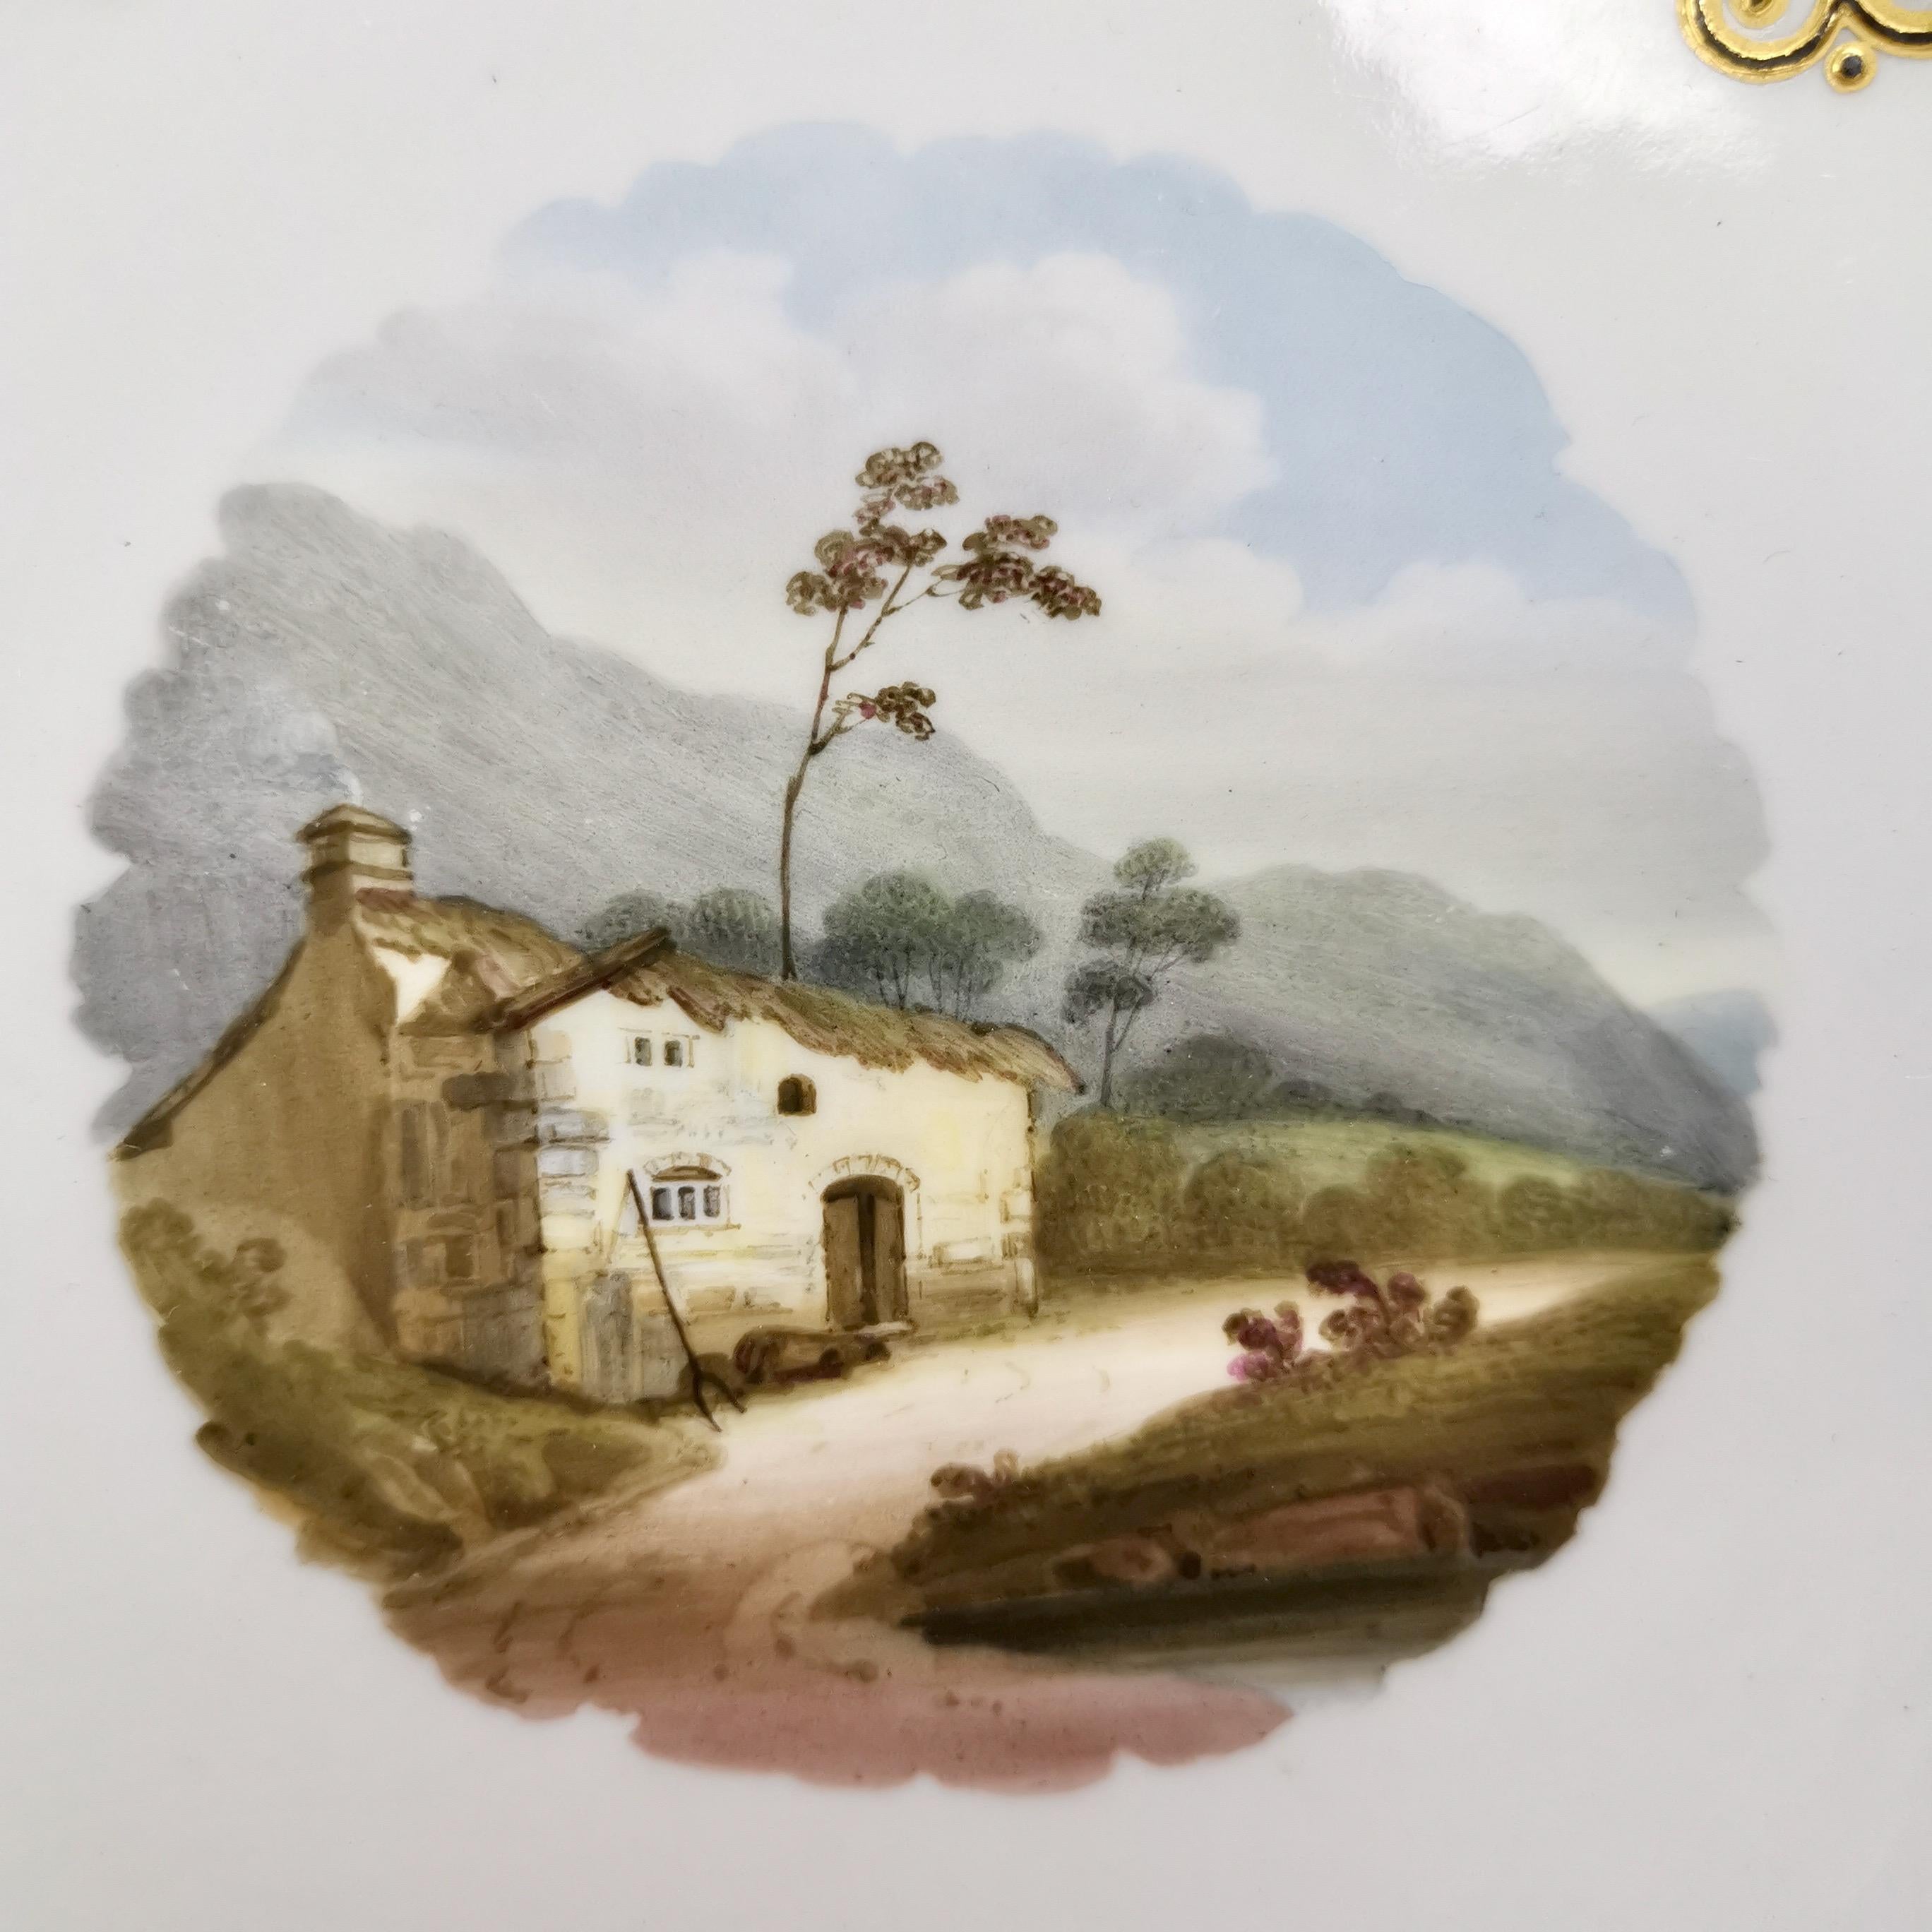 Regency Flight Barr & Barr Set of Dessert Dishes, Maroon with Landscapes, 1813-1840